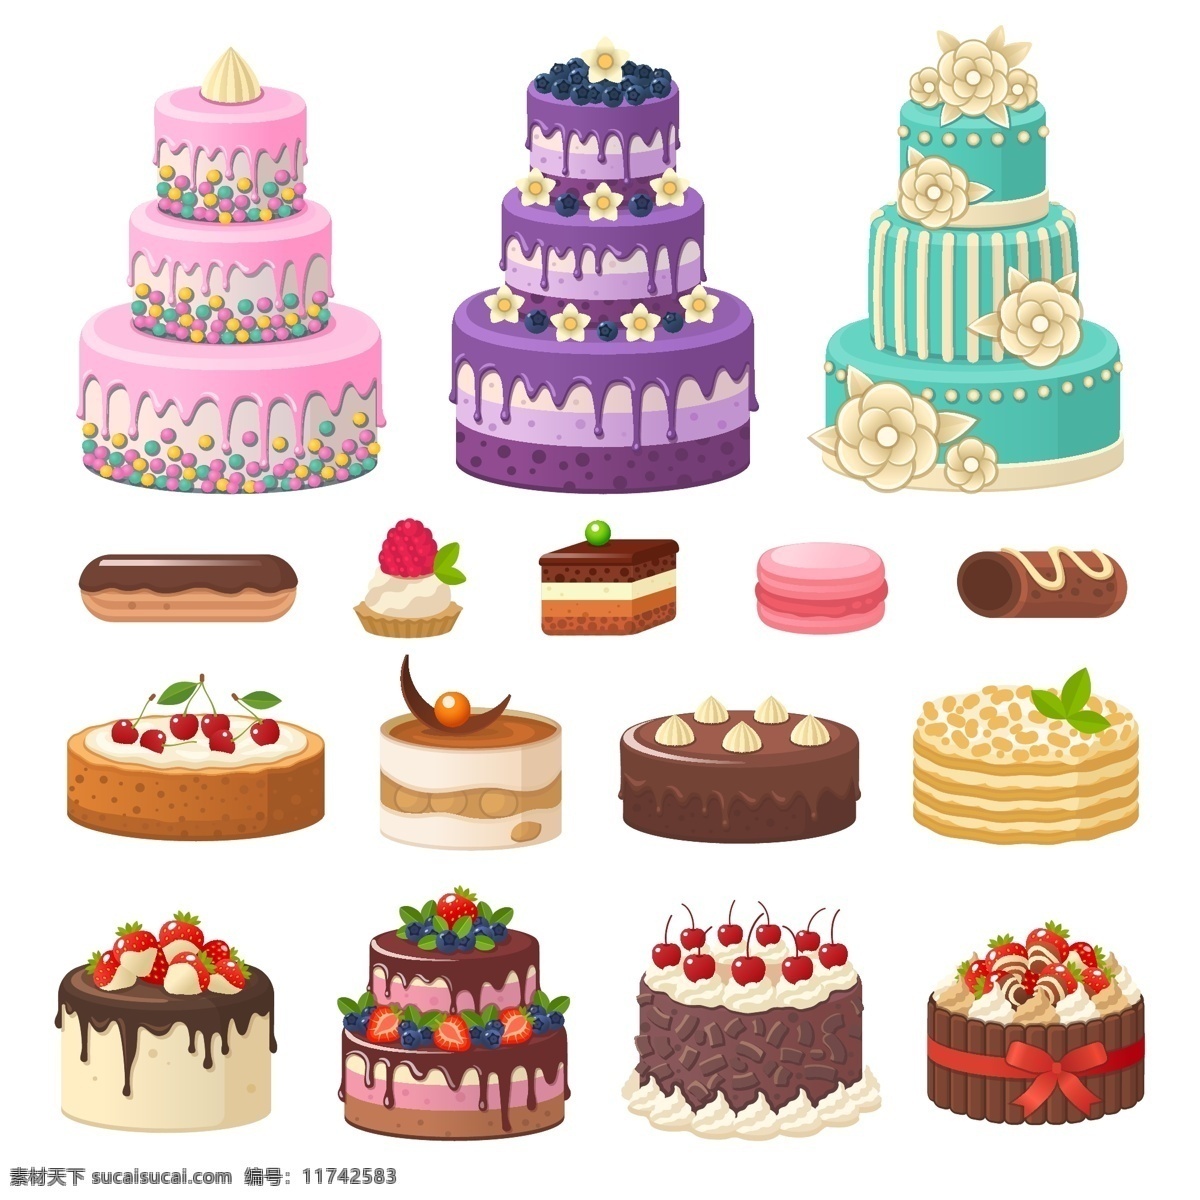 美味 生日蛋糕 插画 蛋糕 烘焙 结婚 巧克力 生日 水果 甜品